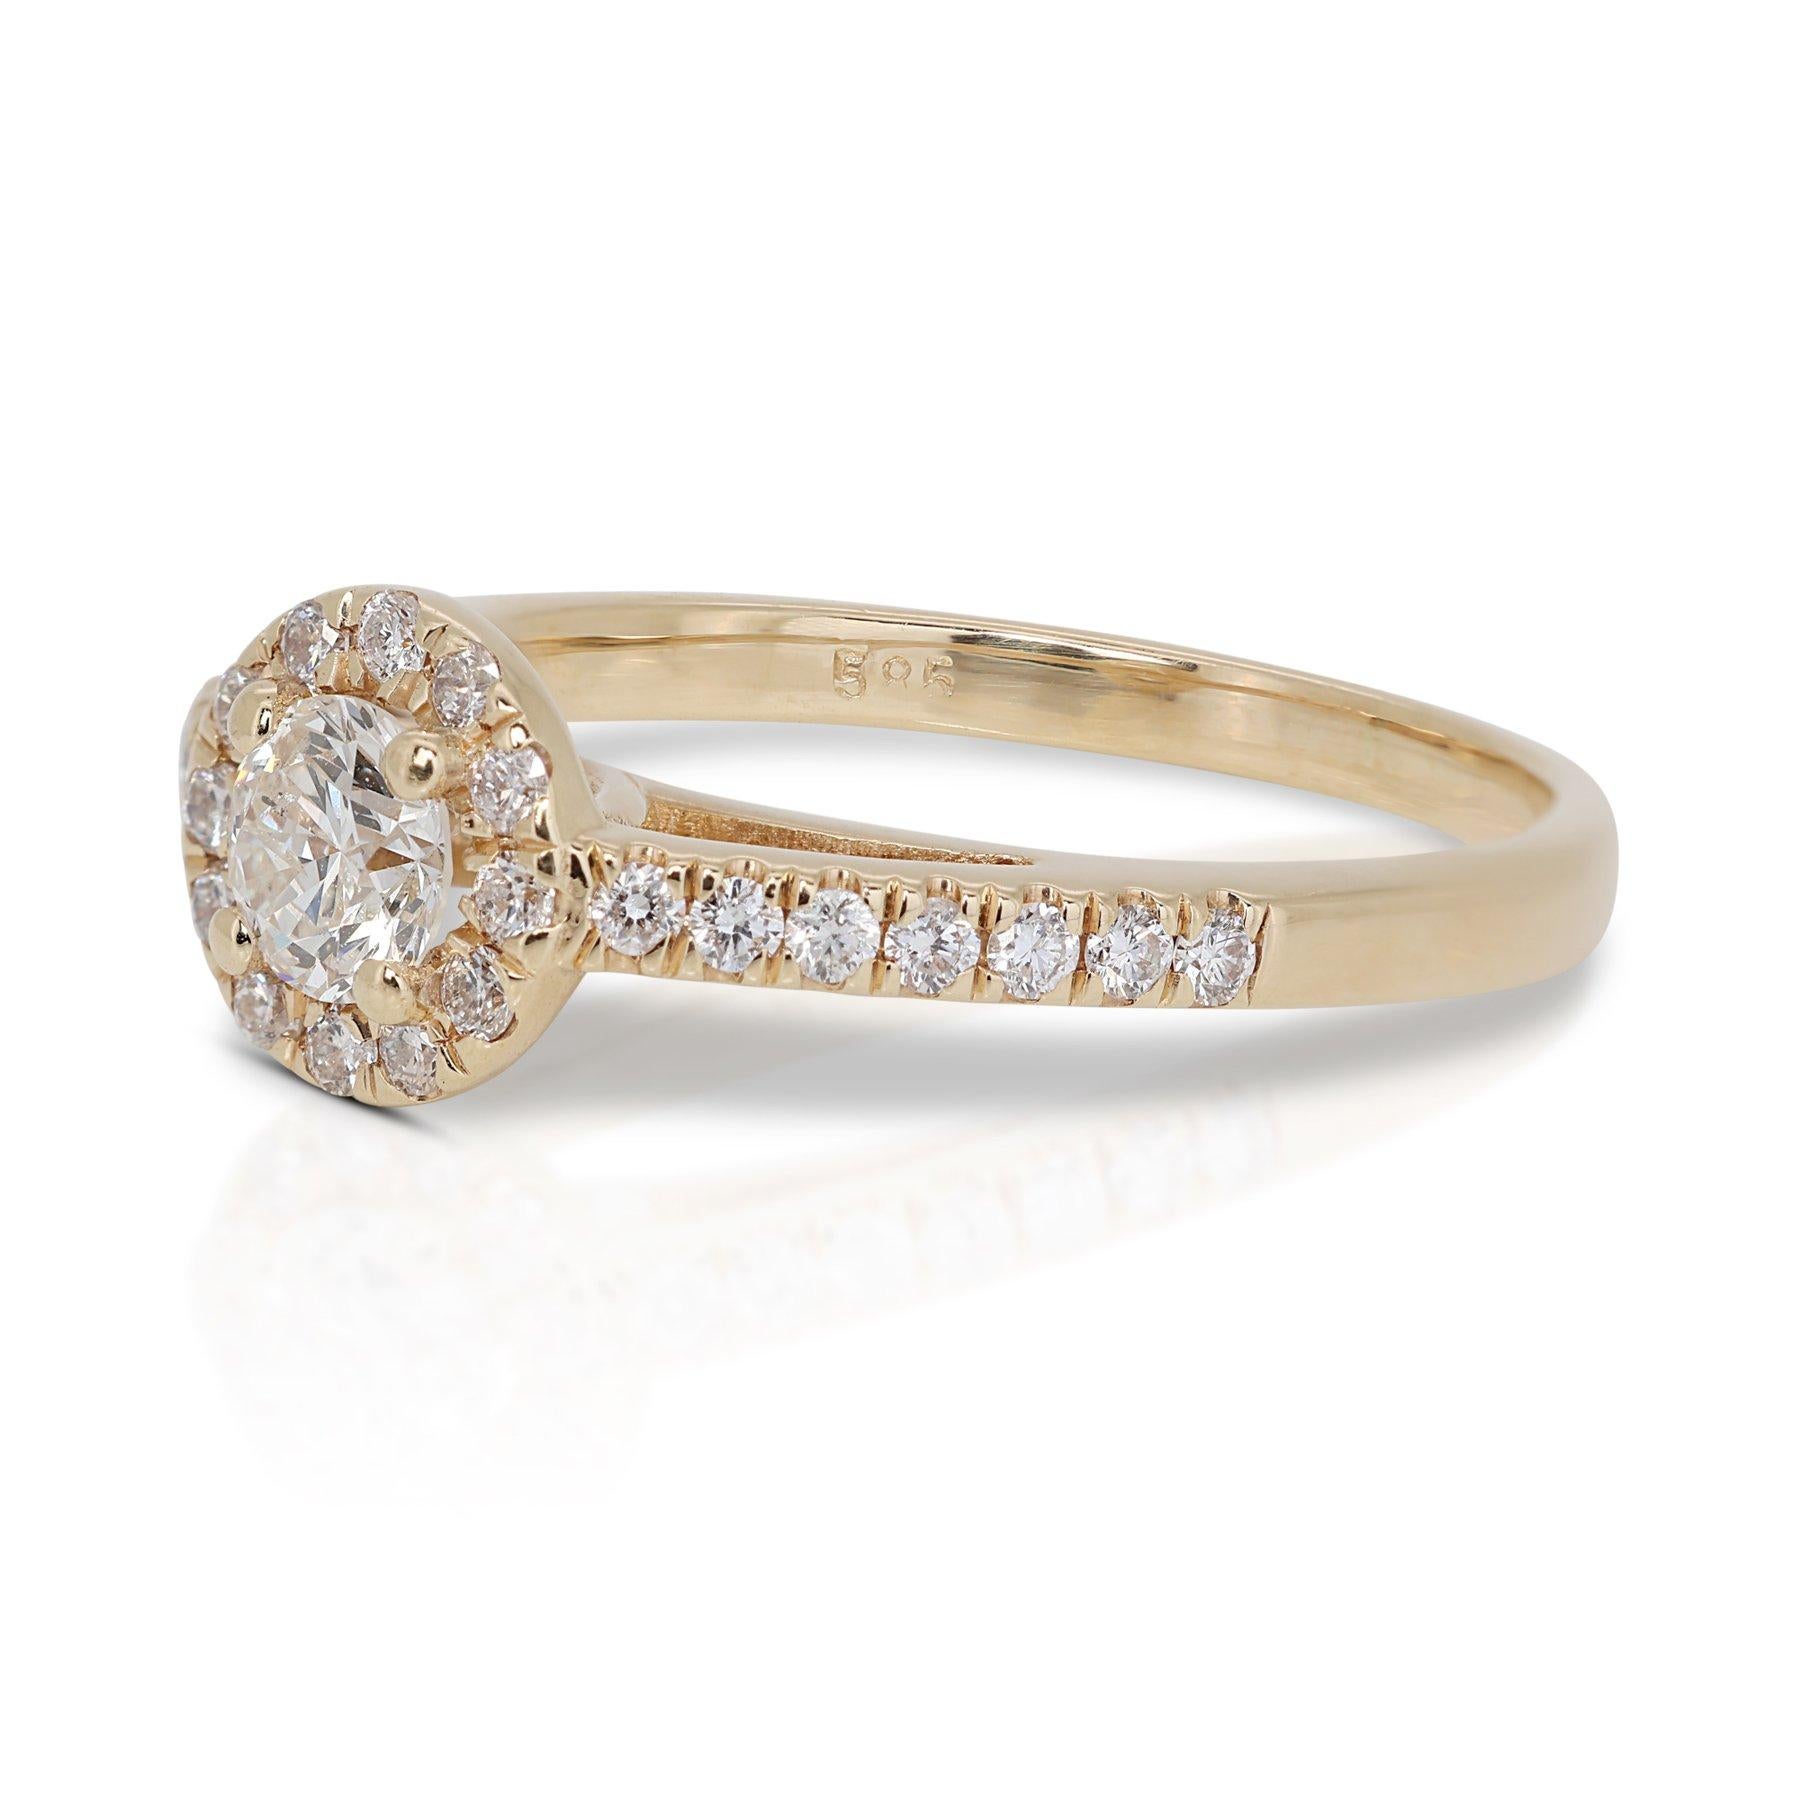 Enchanteresse bague halo de diamants 0,98 carat en or jaune 18 carats, certifiée GIA

Plongez dans la splendeur de cette bague halo en or jaune 18k à diamants, conçue pour capturer et refléter la lumière à chaque tour. En son cœur se trouve un